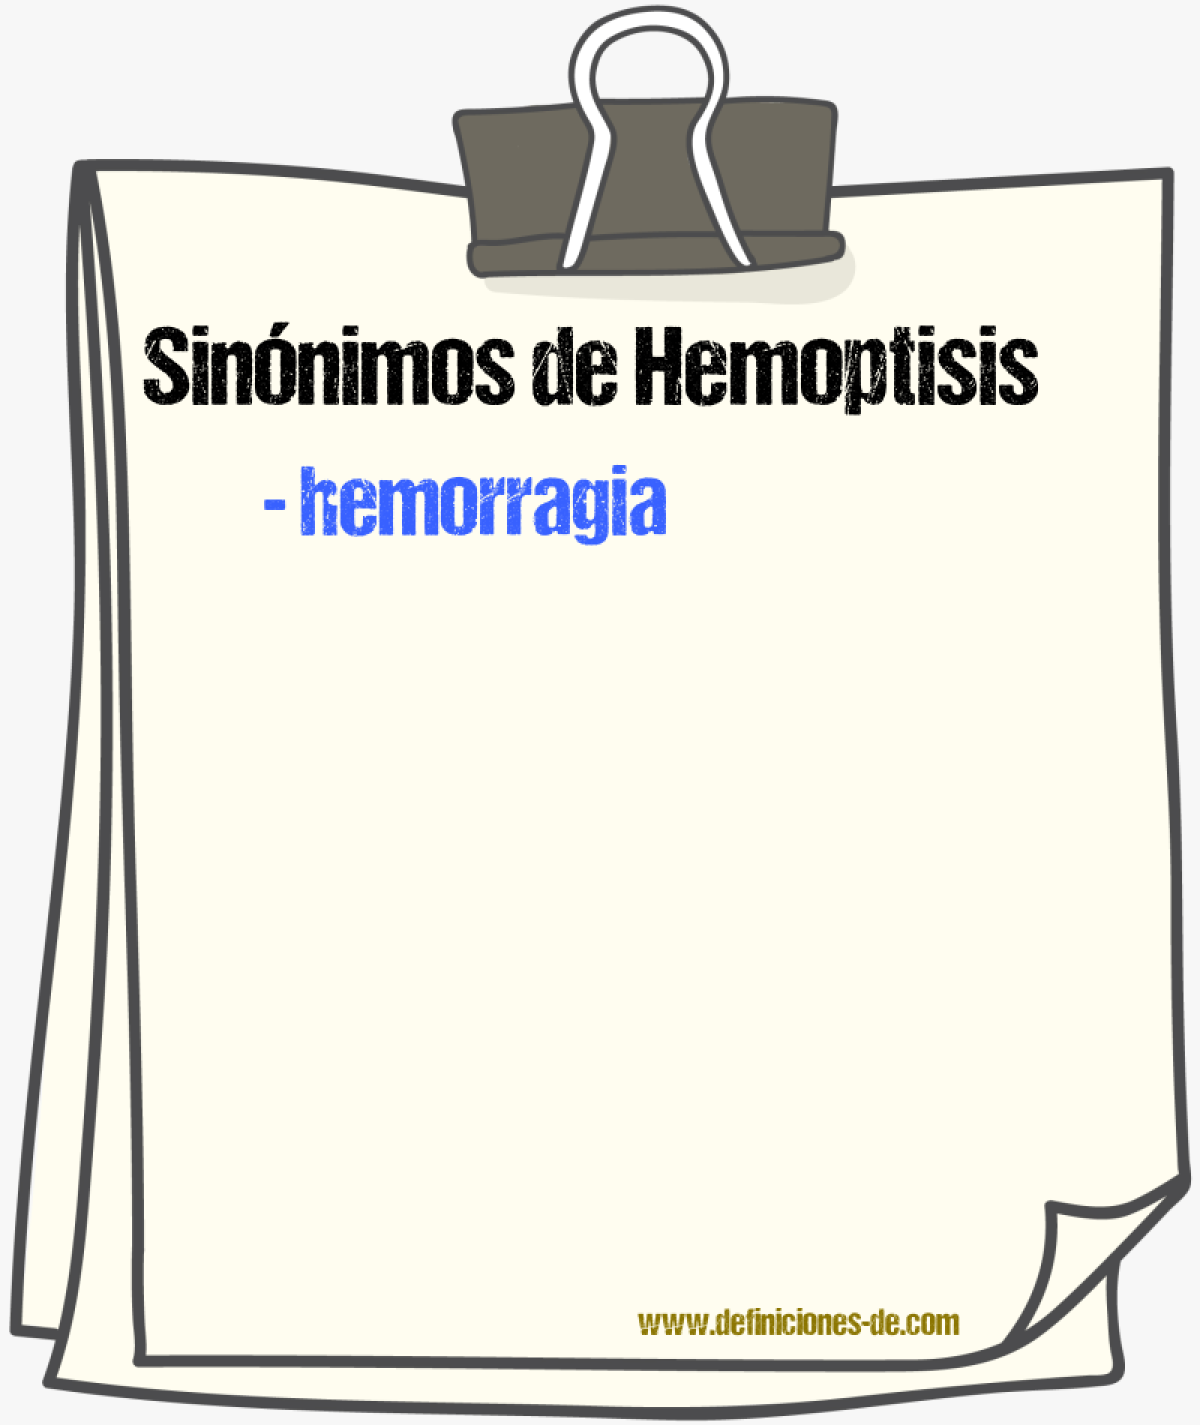 Sinnimos de hemoptisis